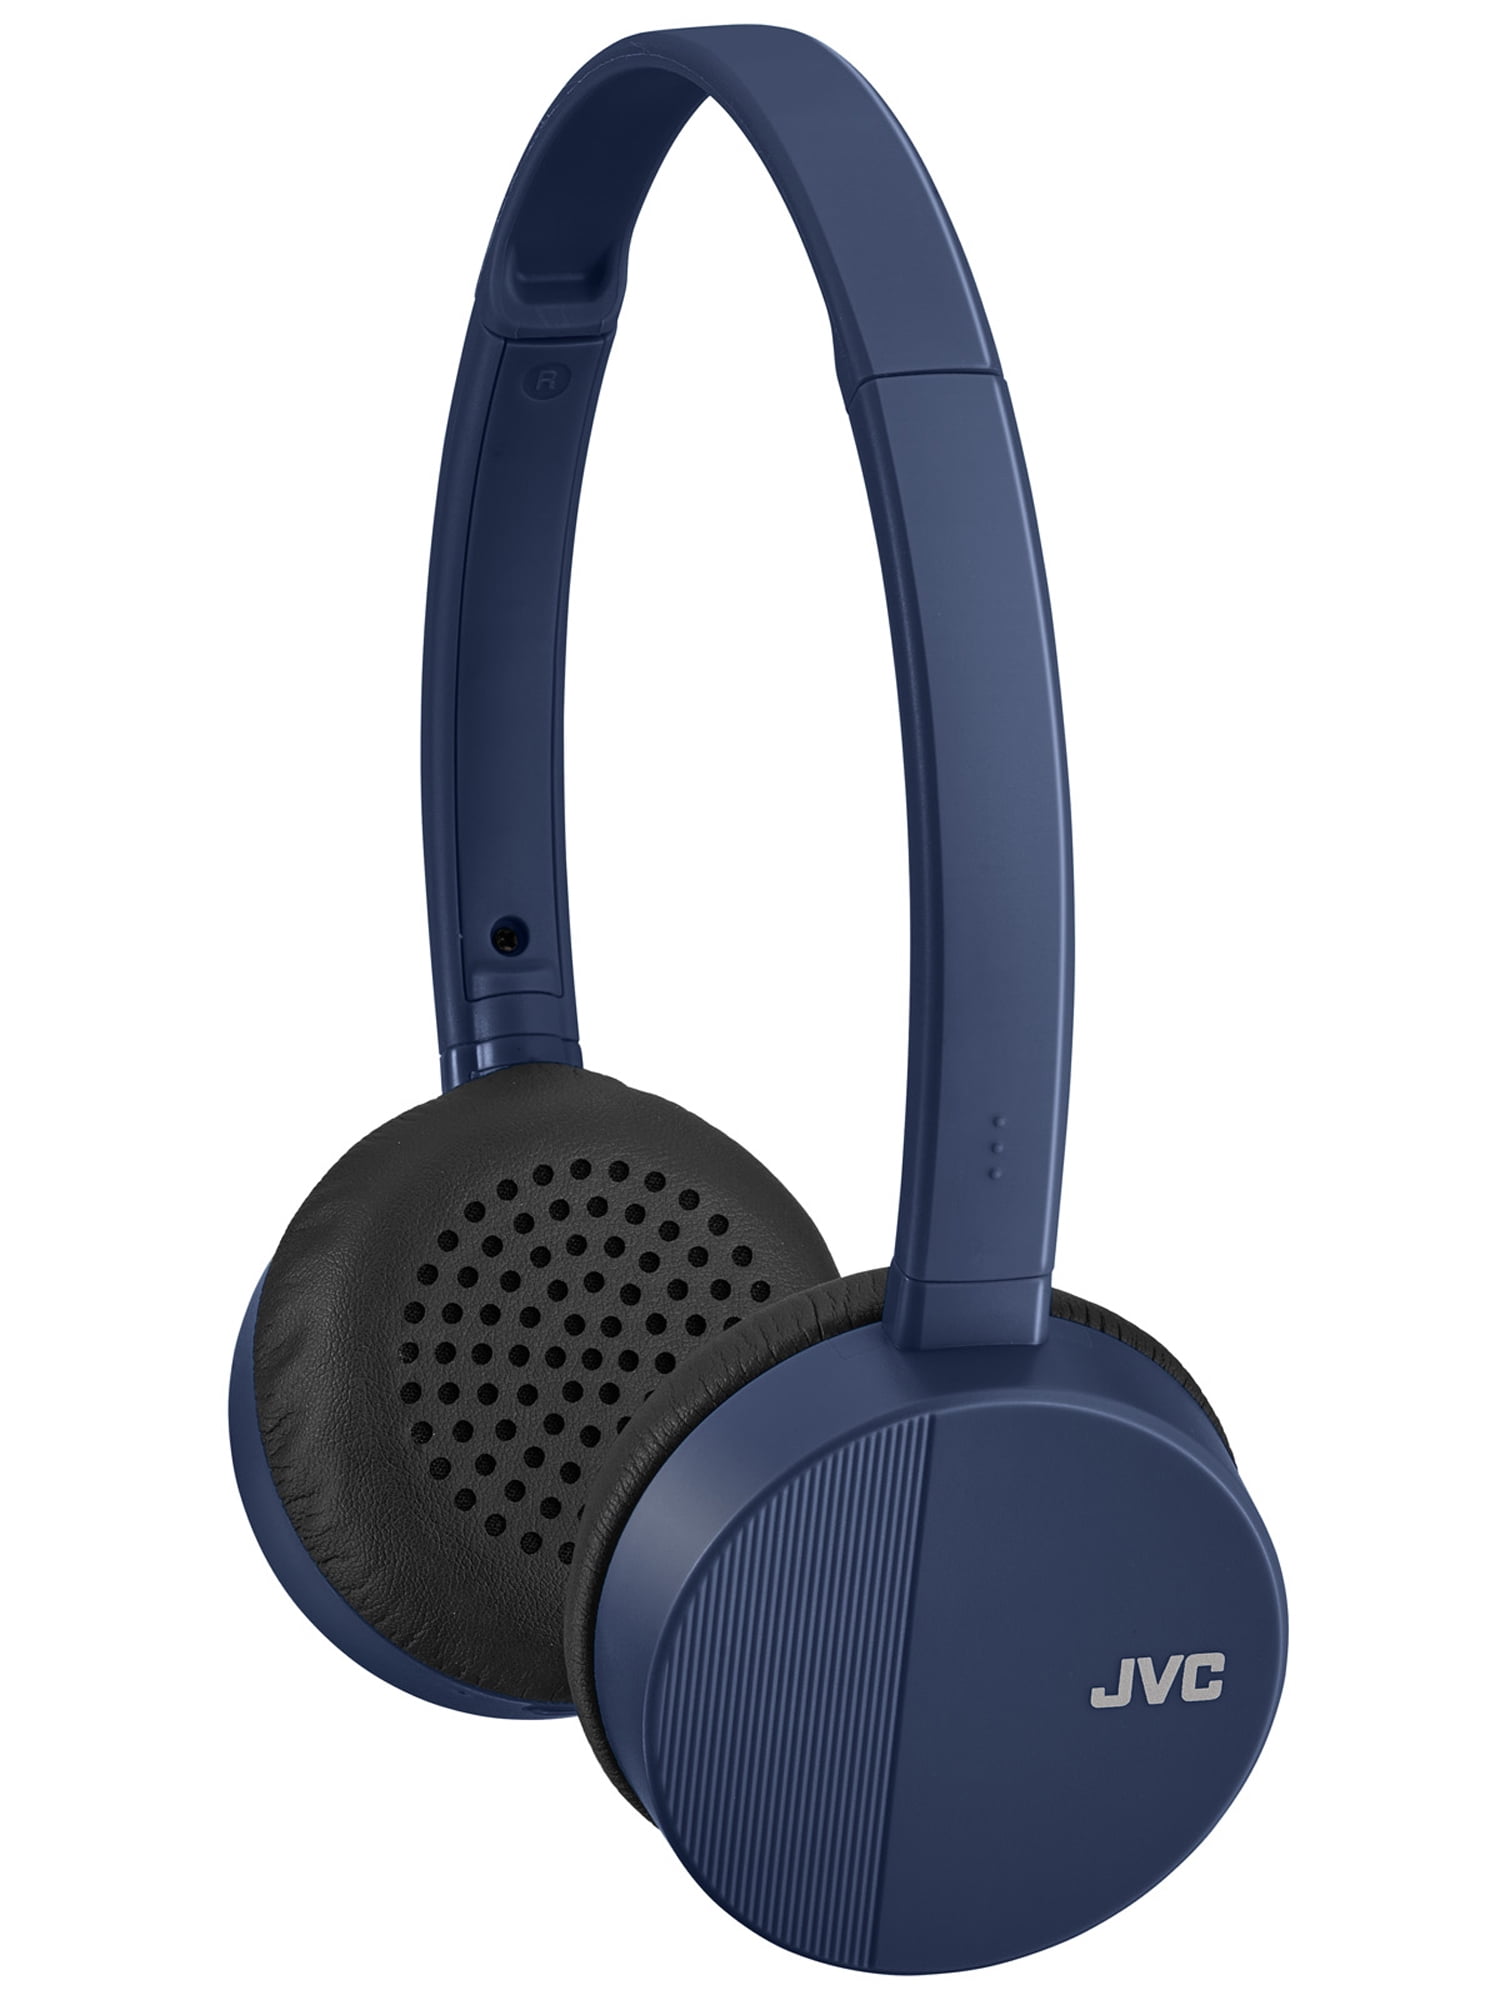  JVC HA-S23W - Auriculares inalámbricos con Bluetooth, diseño  plano plegable, batería de larga duración de 17 horas (azul) : Electrónica